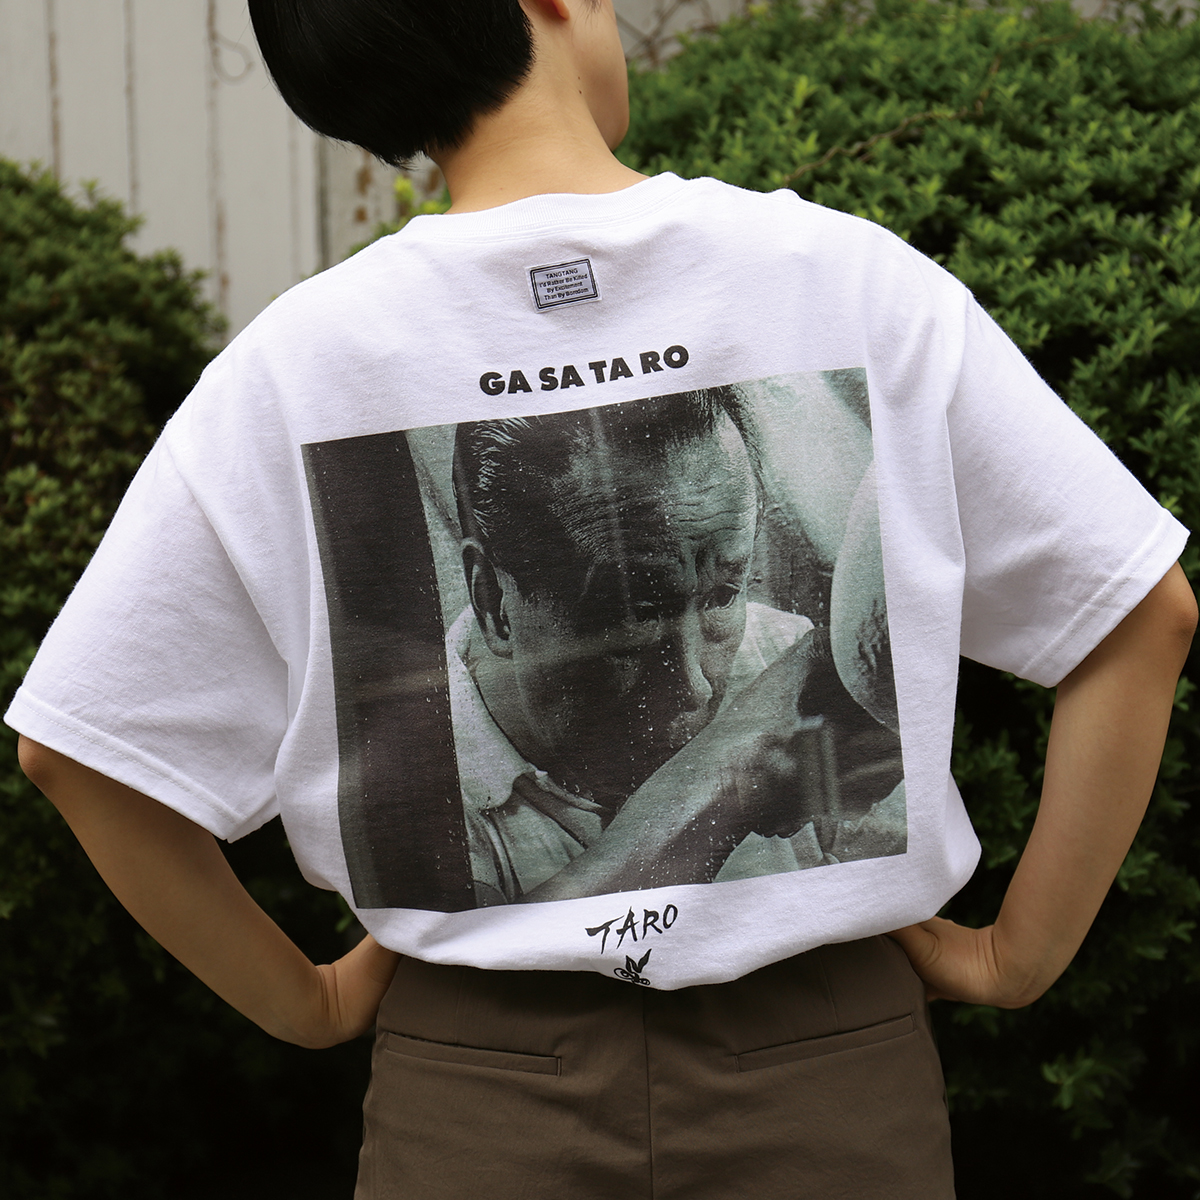 Tシャツレーベル「GASATANG」が岡本太郎作品とコラボ、太陽の塔を 